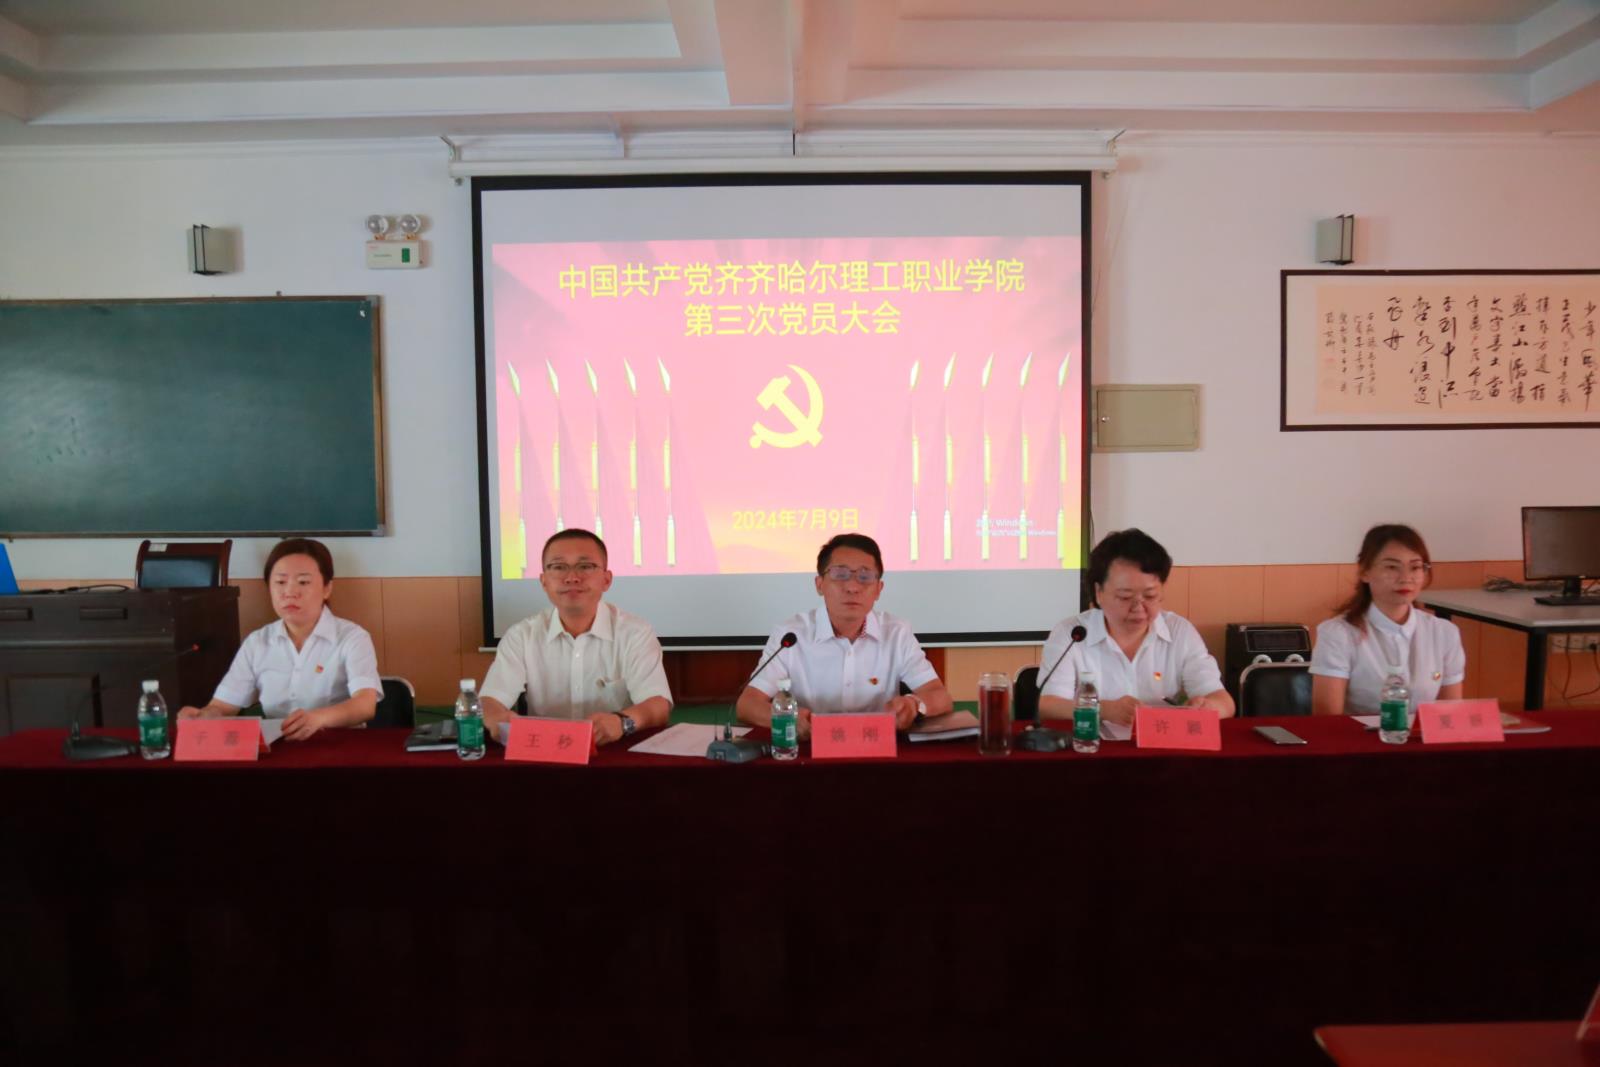 中国共产党米乐m6
职业学院第三次党员大会胜利召开